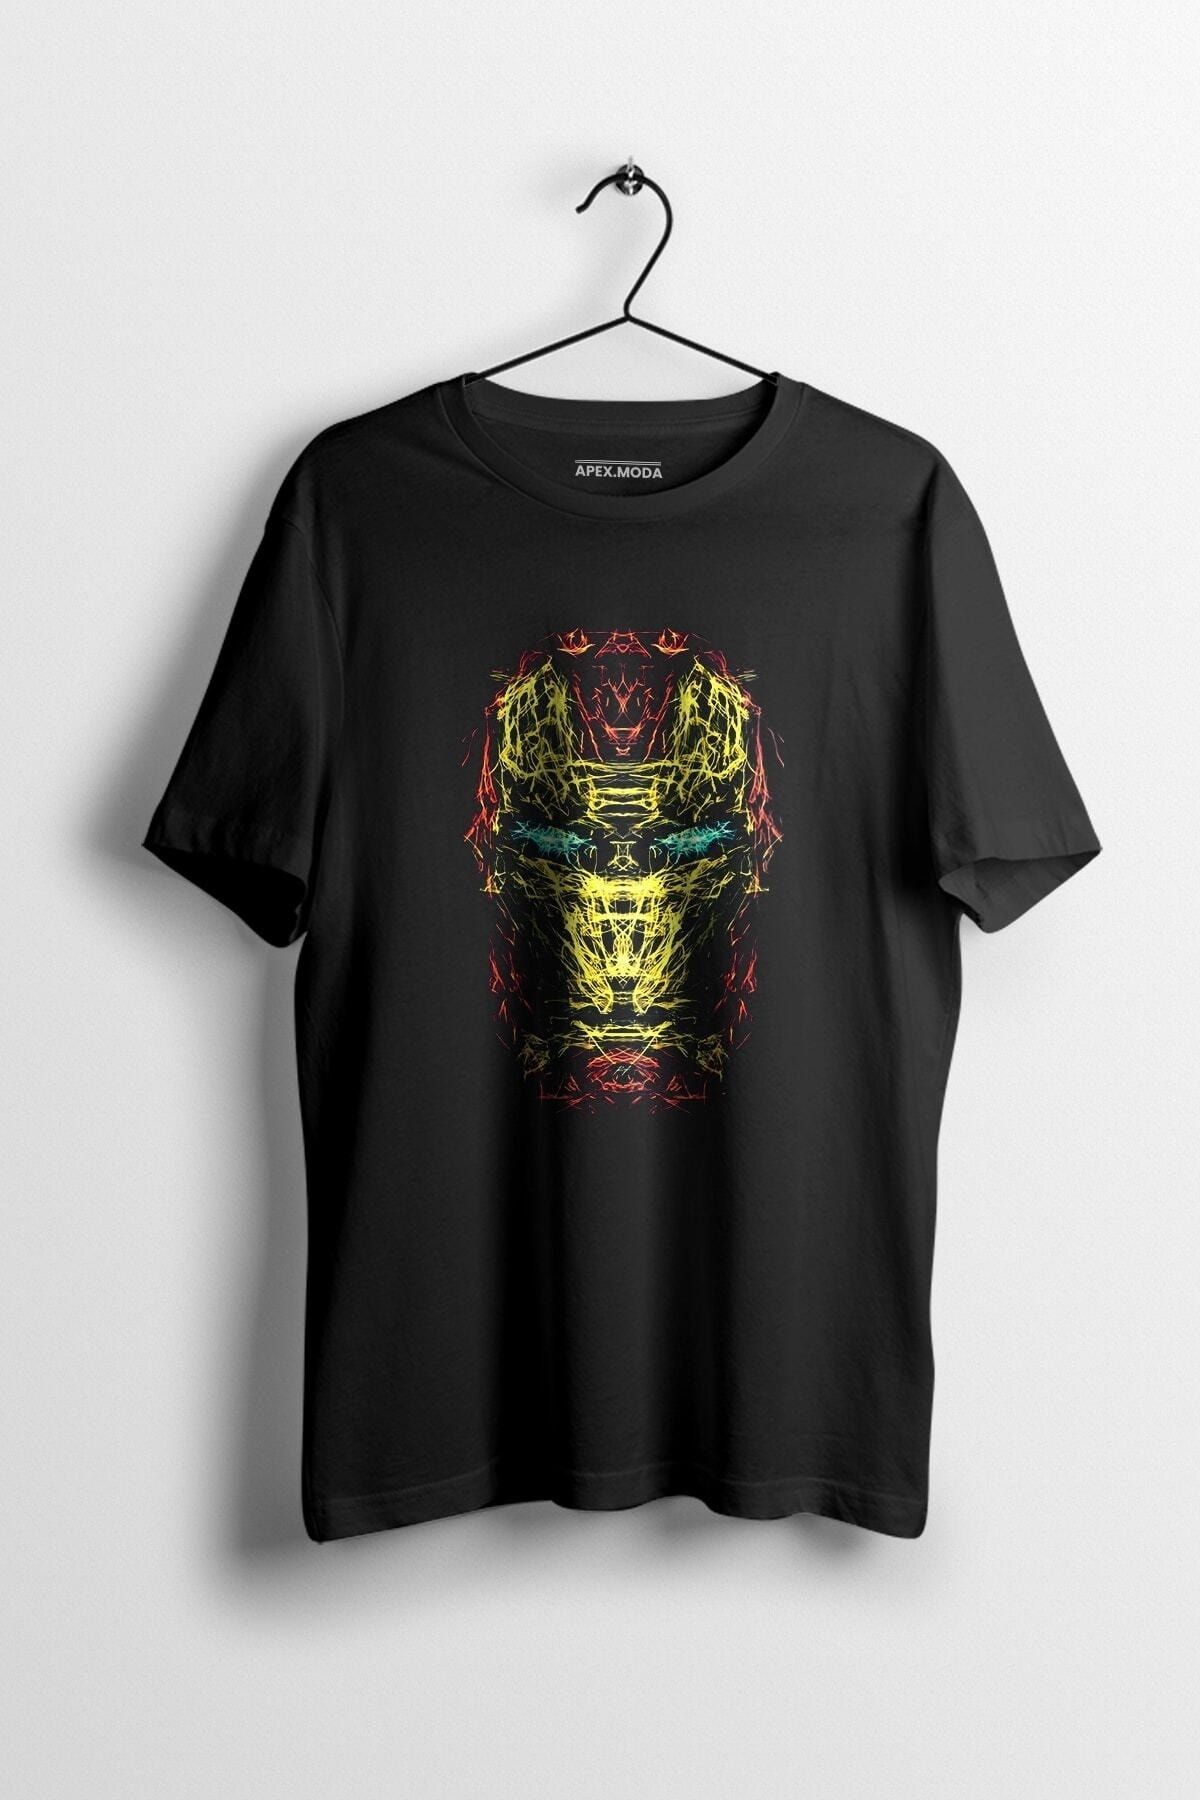 WePOD Ironman Art Baskılı Tişört Baskılı Siyah Kısa Kollu Unisex Tişört